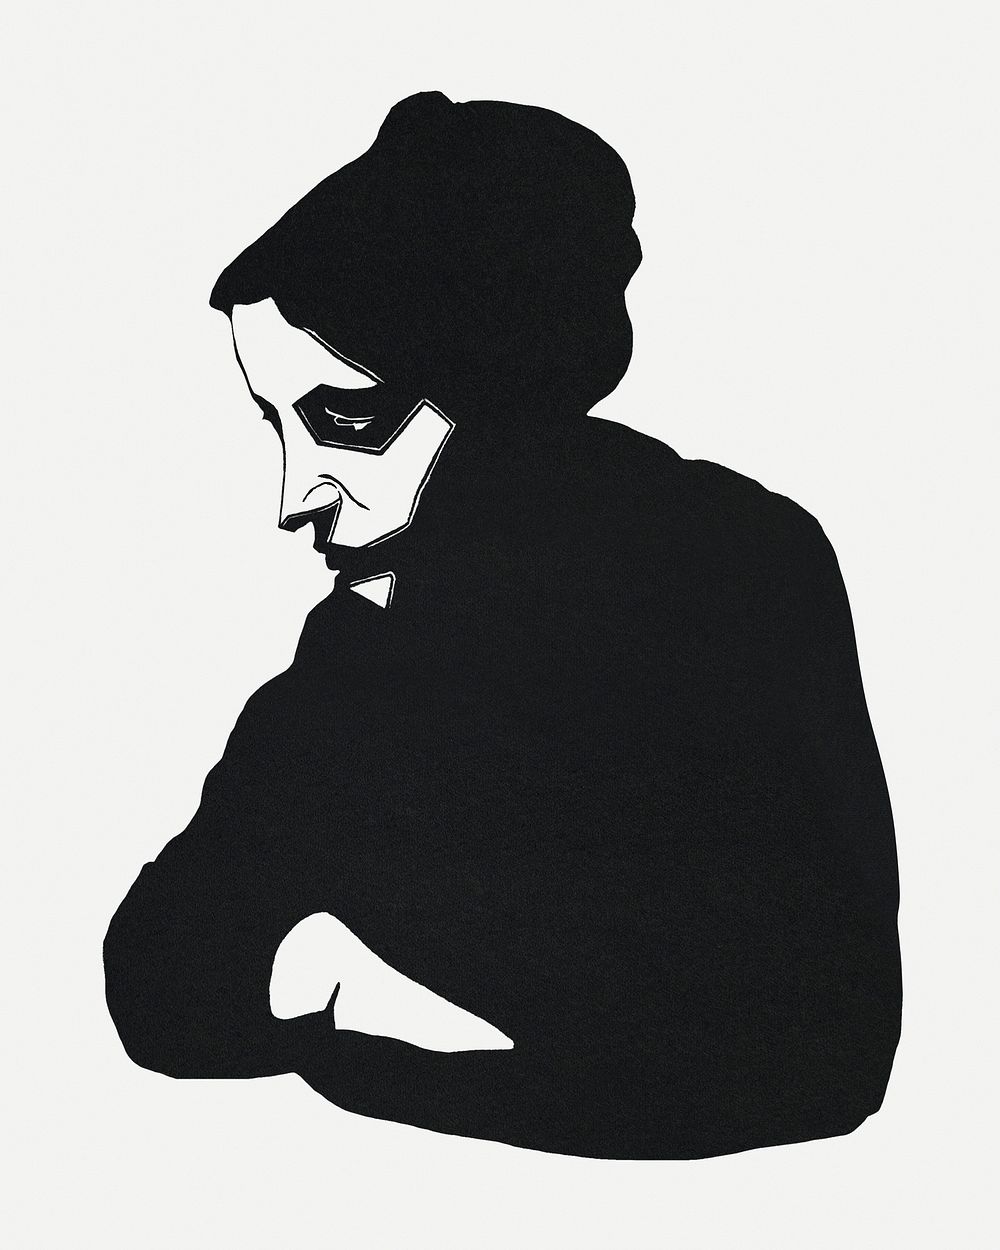 Vintage woman portrait psd art print, remix from artworks by Samuel Jessurun de Mesquita